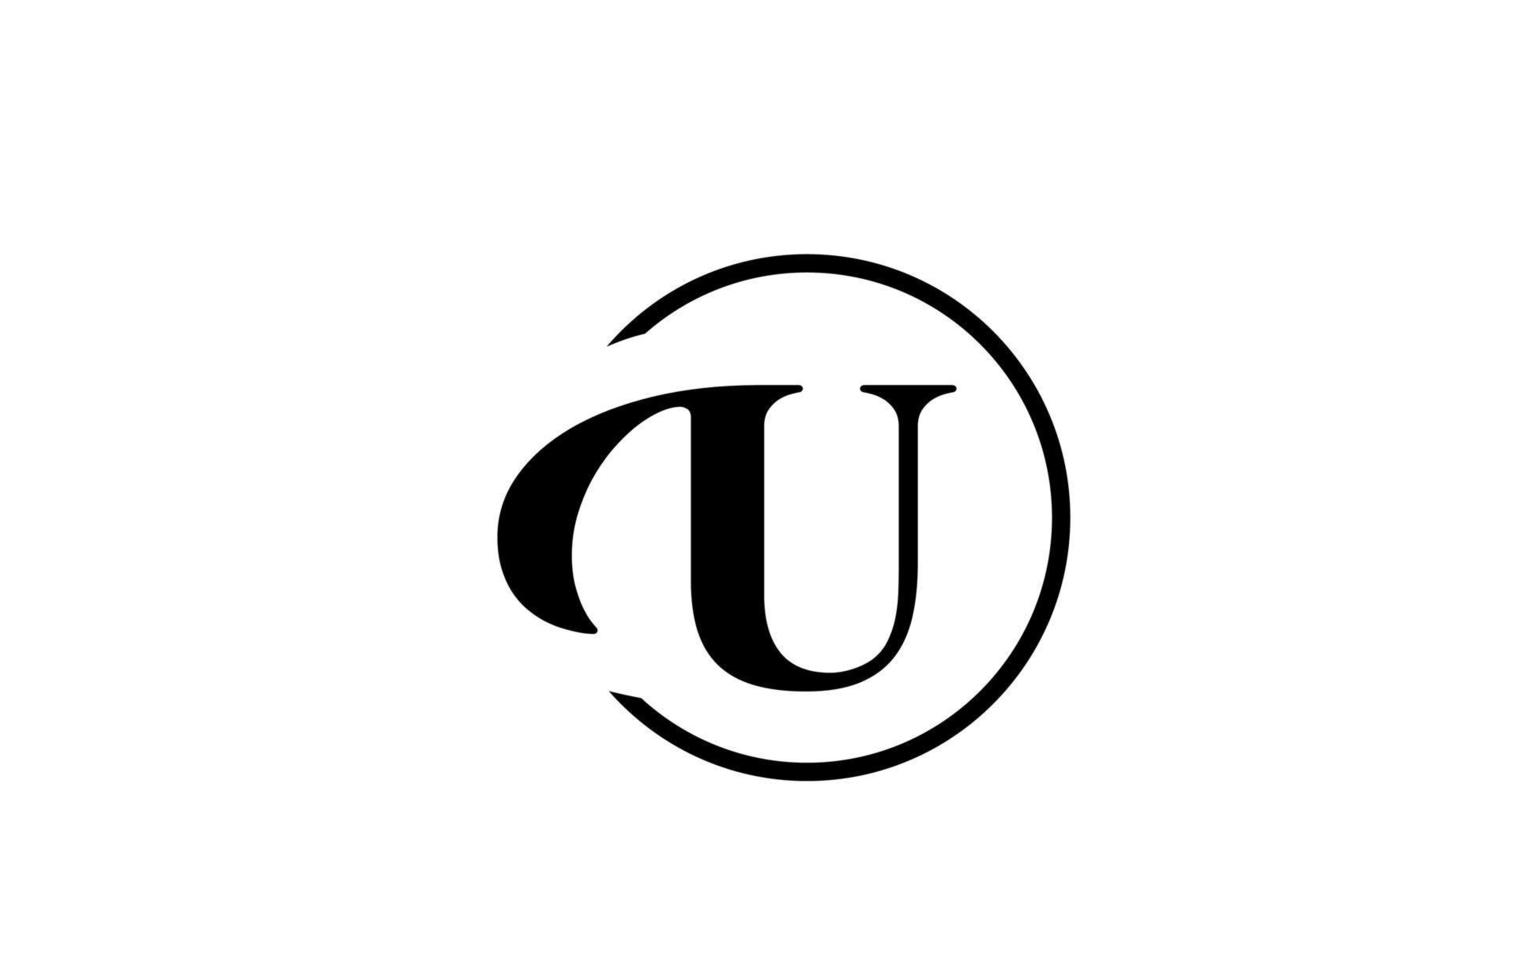 U icono de logotipo de letra del alfabeto en color blanco y negro simple. Diseño de círculo elegante y creativo para negocios y empresa. vector